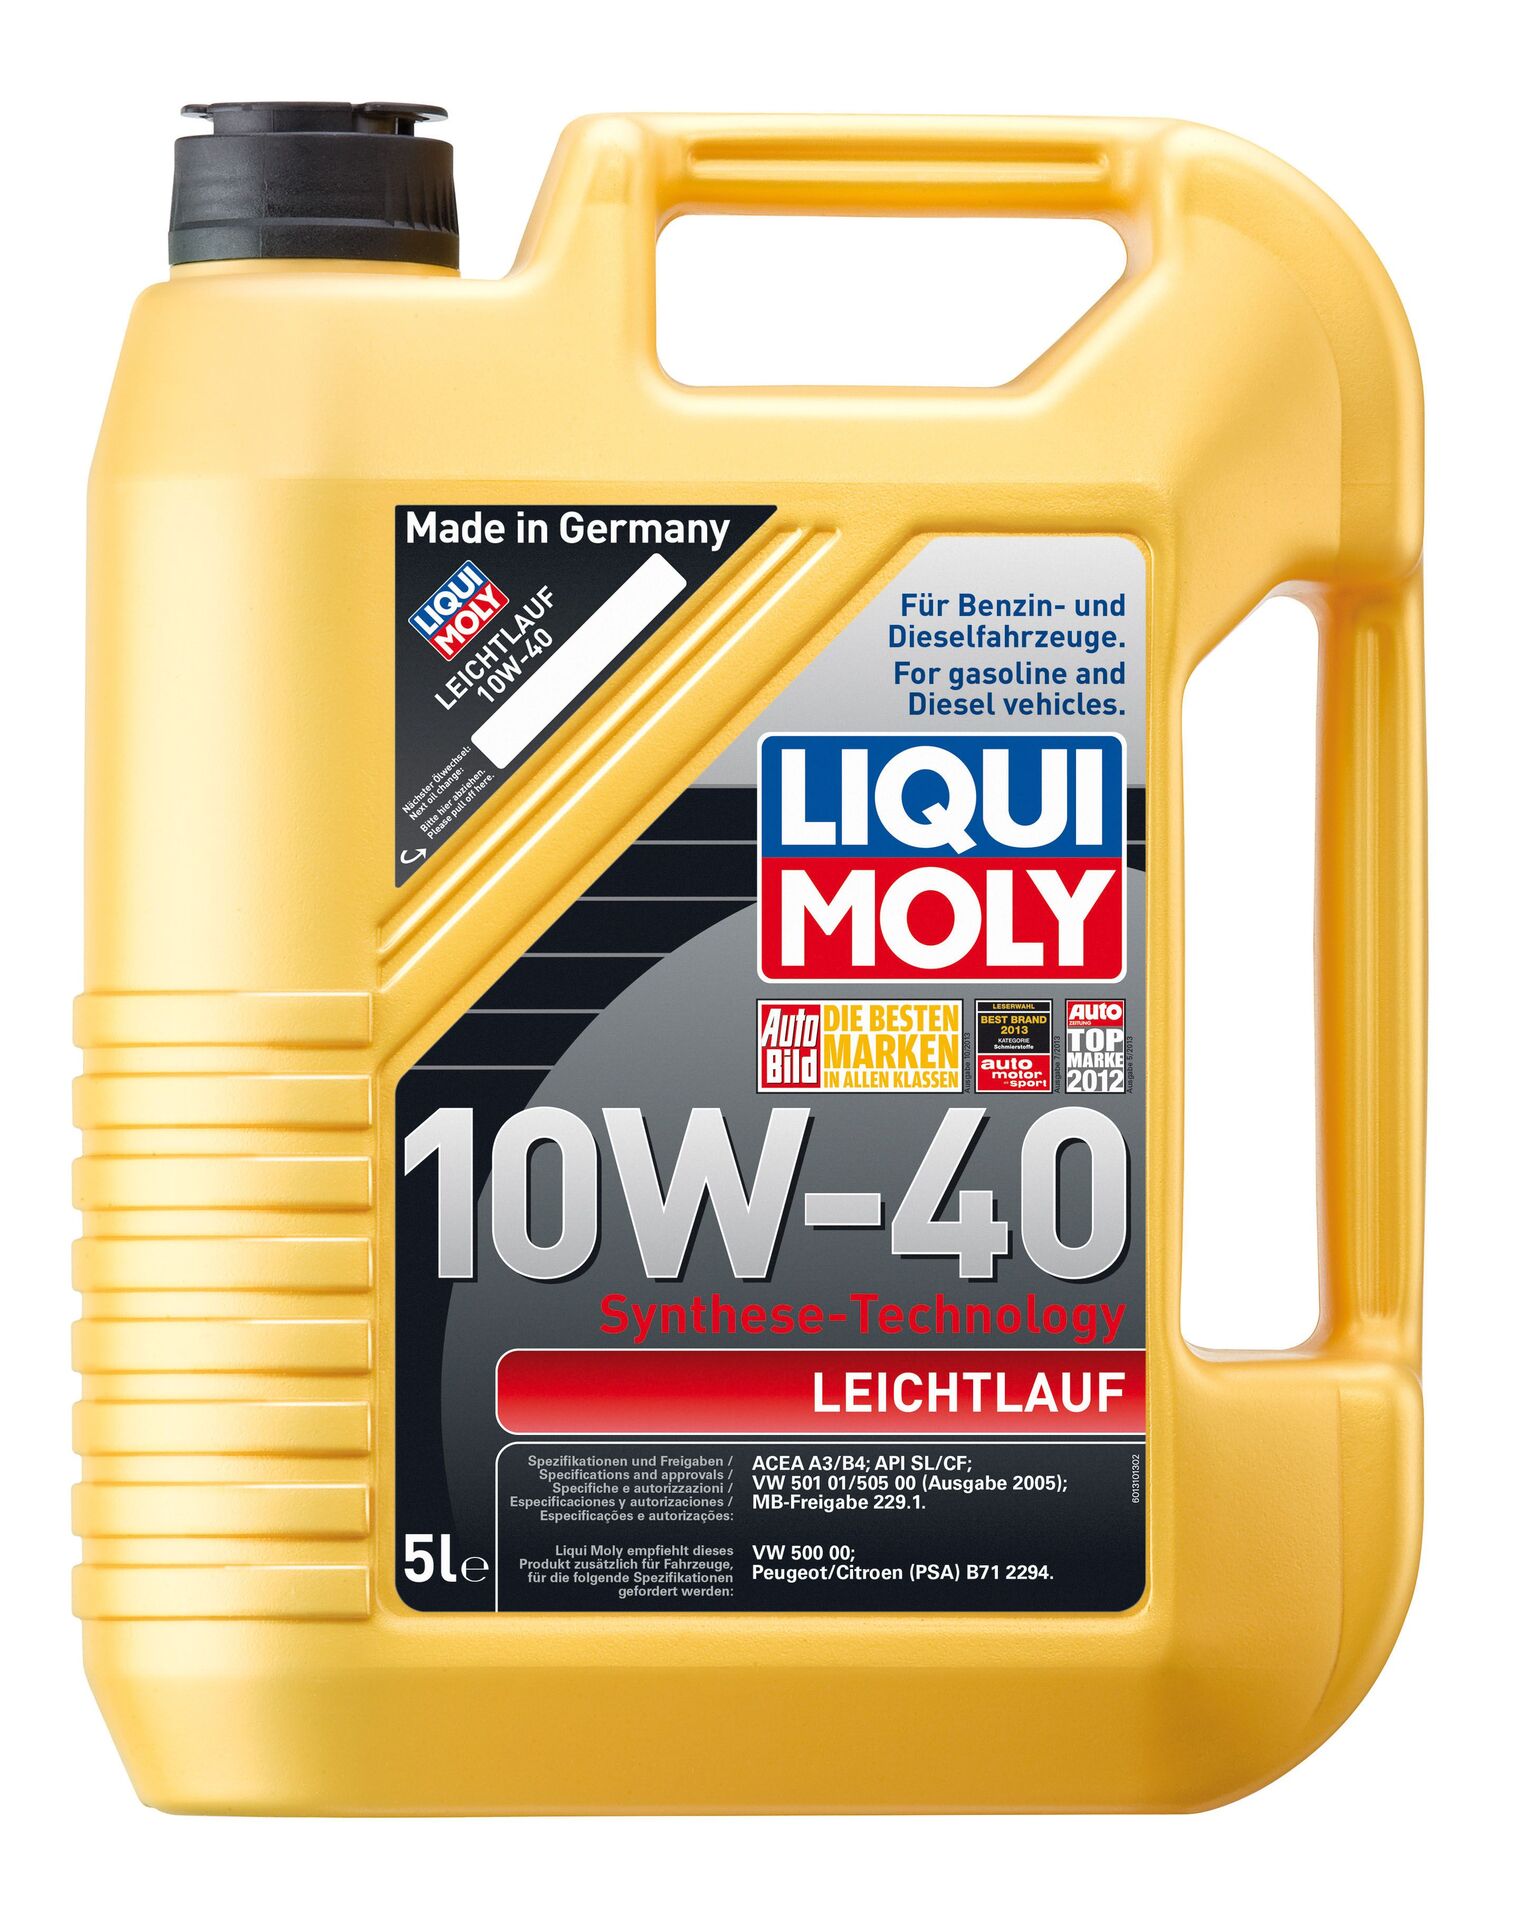 Liqui Moly Leichtlauf Motorenöl 10 W-40